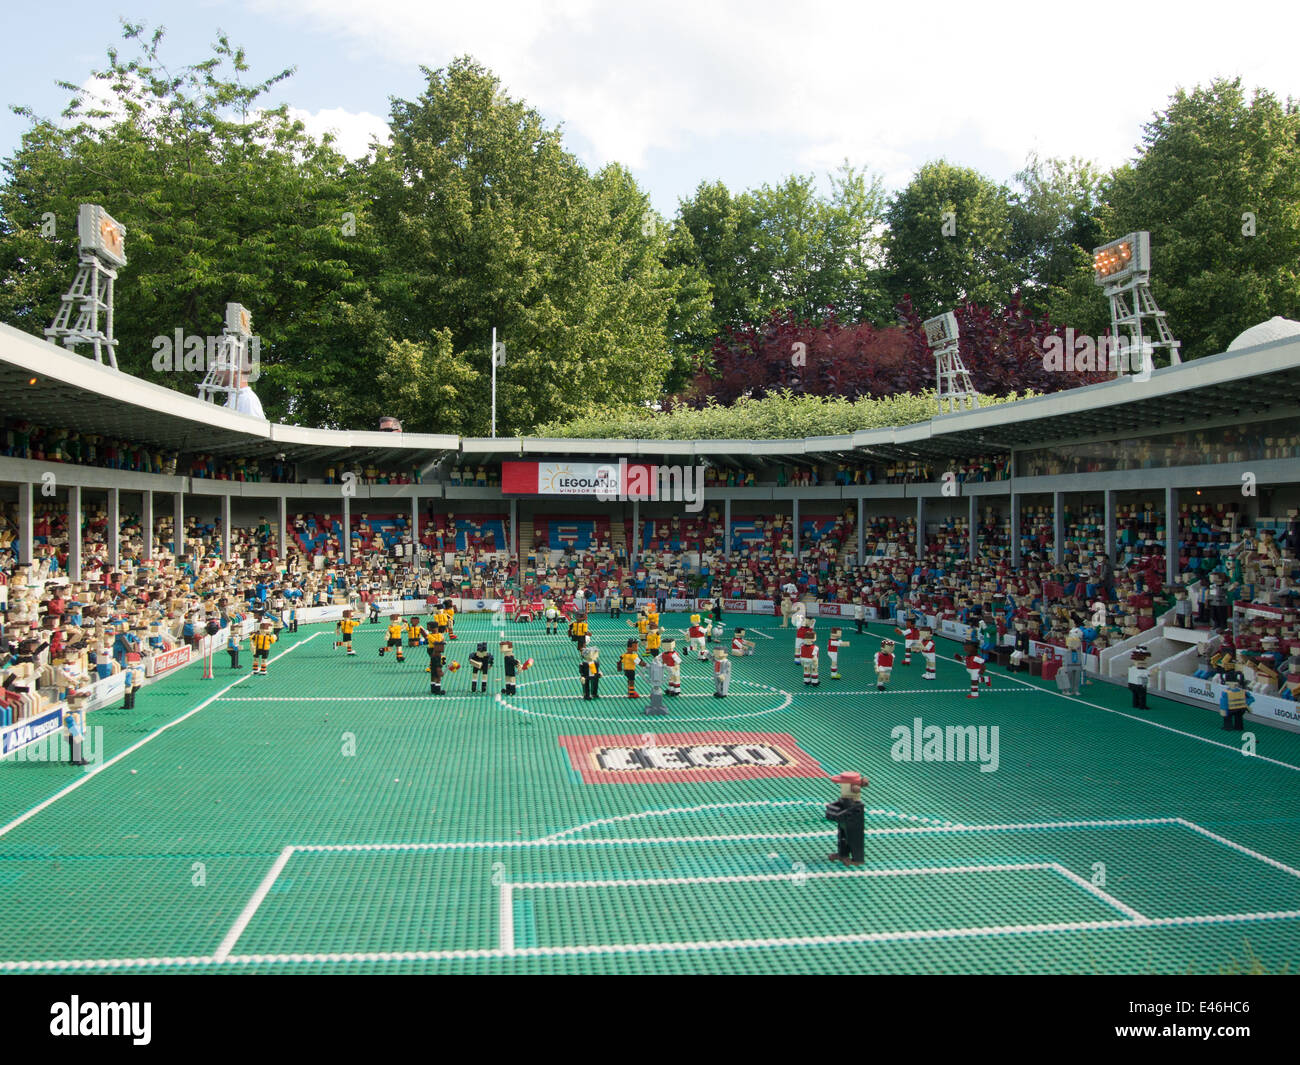 Un modello del vecchio stadio di Wembley realizzato da migliaia di mattoncini Lego a Legoland Windsor, Inghilterra Foto Stock